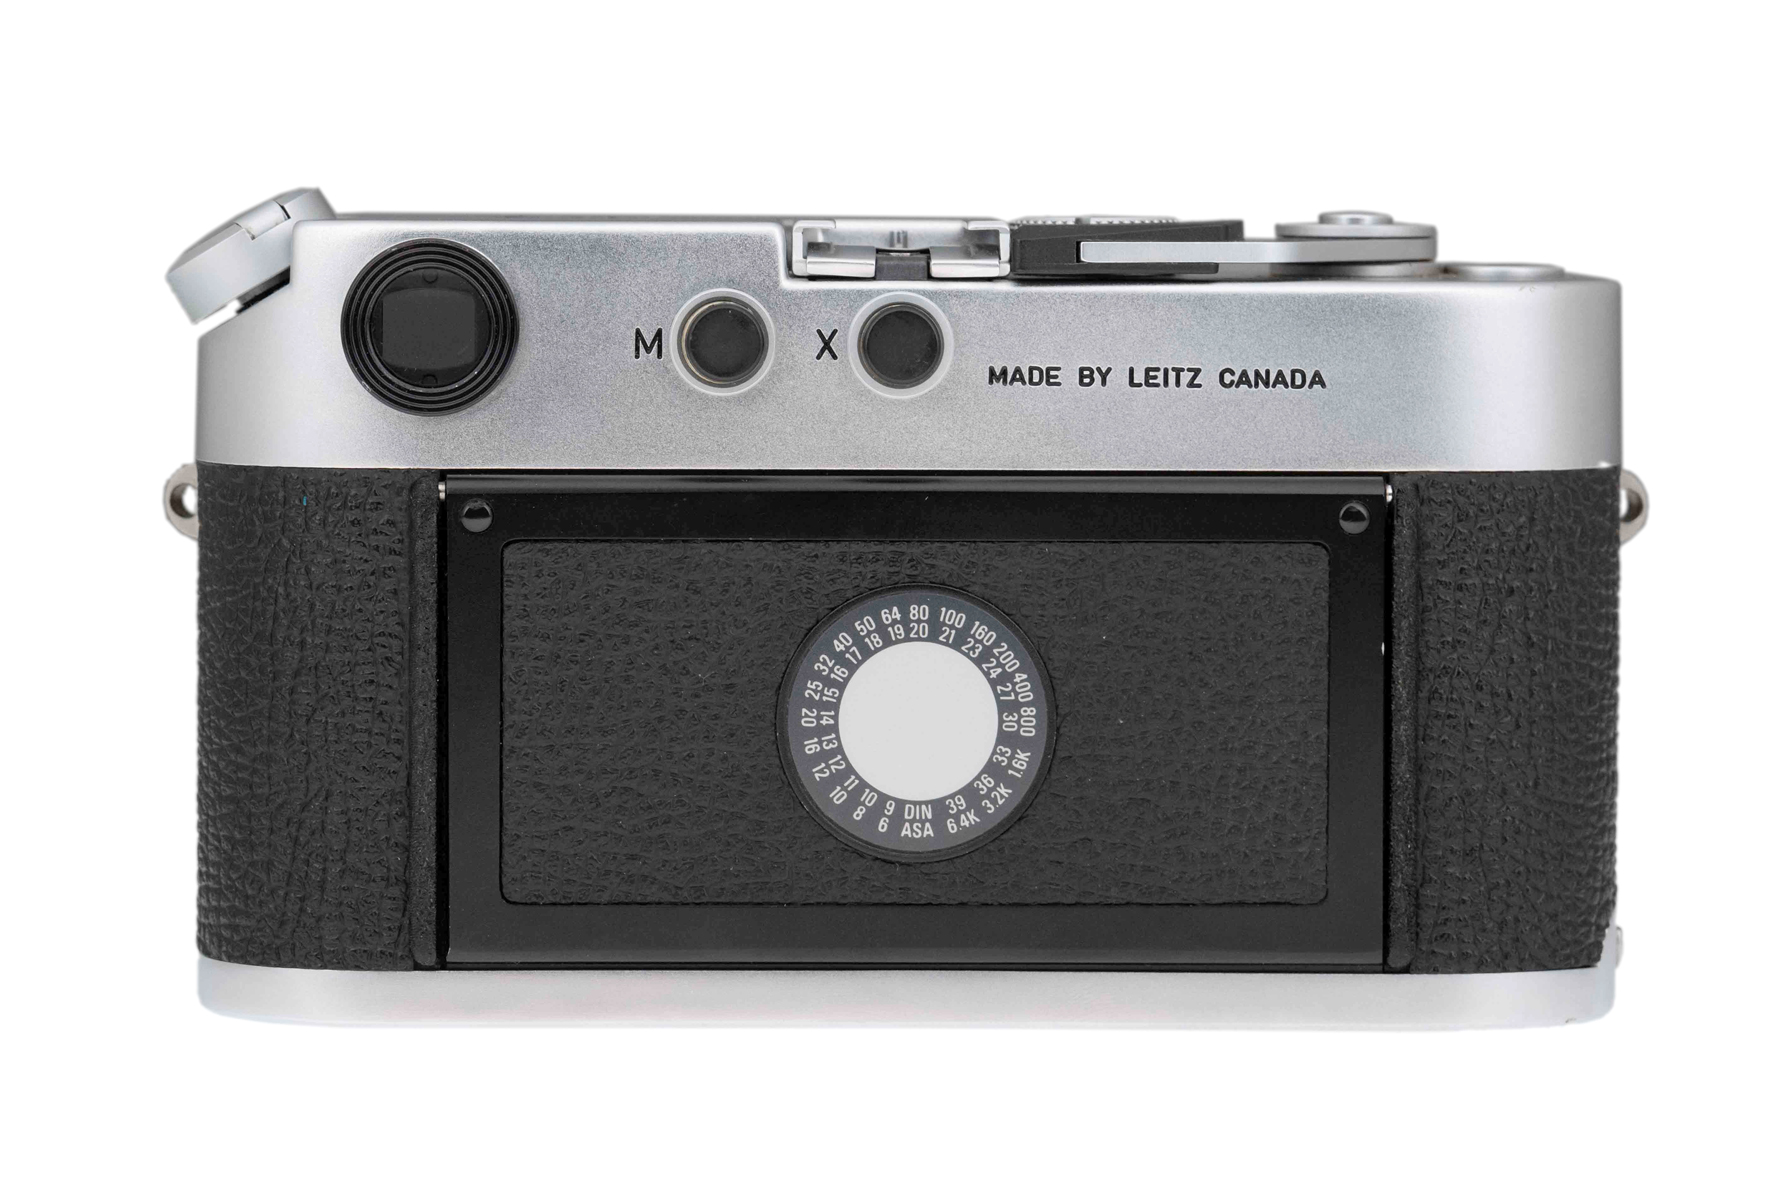  Leica M4-P silver